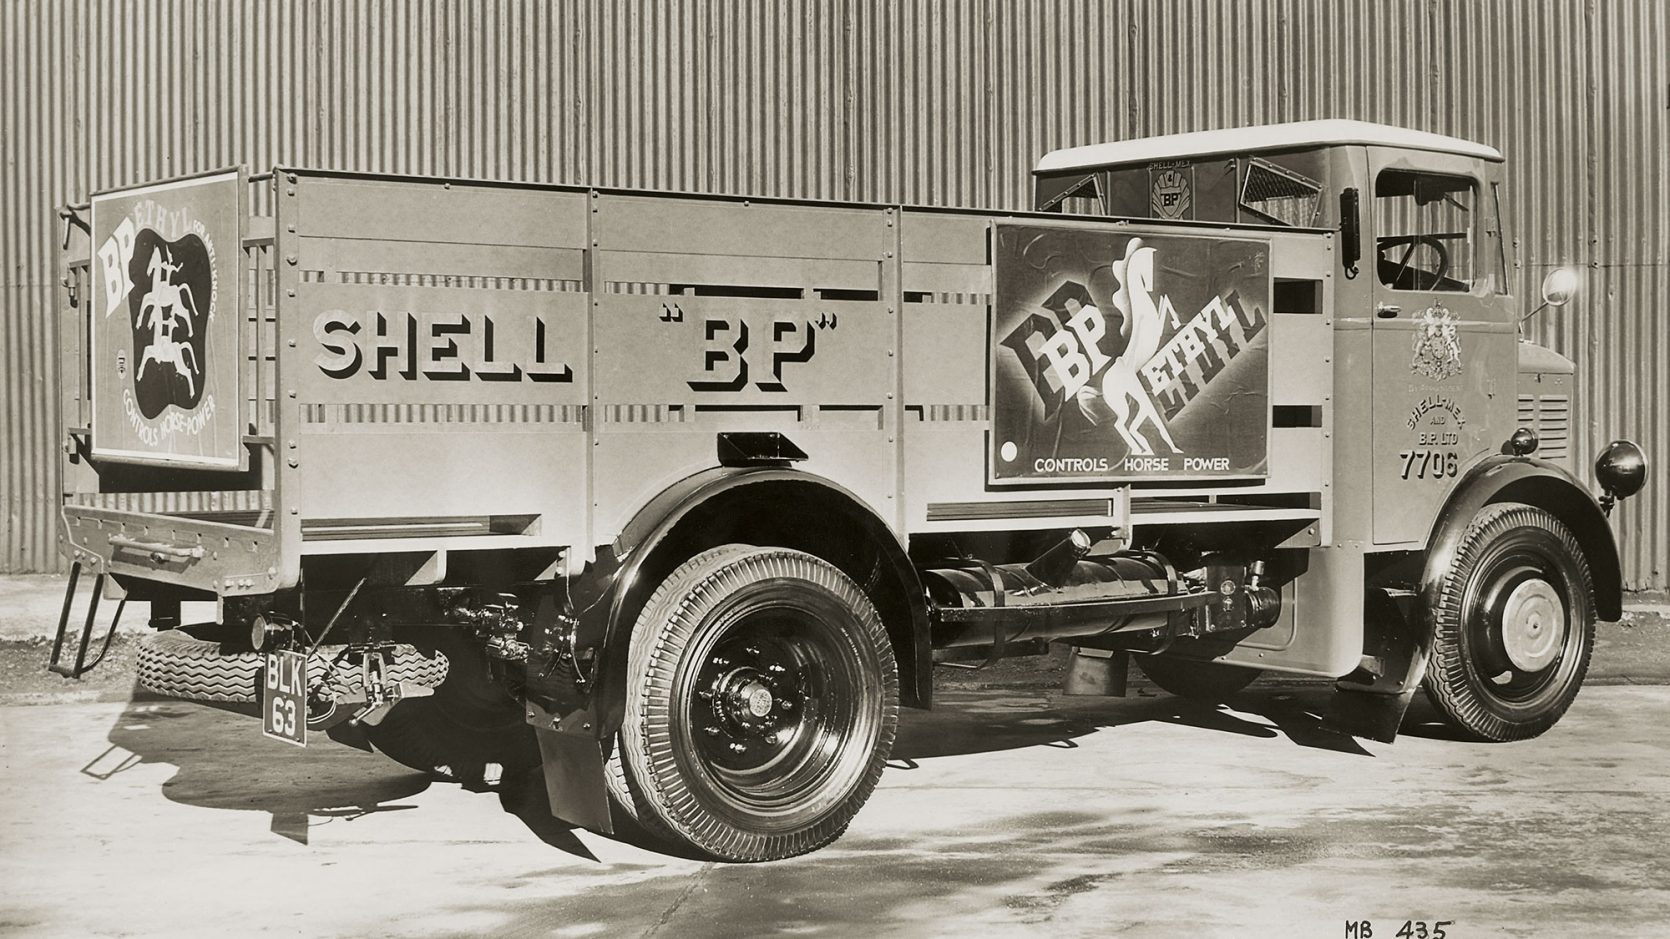 Un camion de livraison des années 1930 faisant la publicité de BP Ethyl. BP et Shell ont partagé une entreprise commune de commercialisation au Royaume-Uni en raison des conditions économiques difficiles.